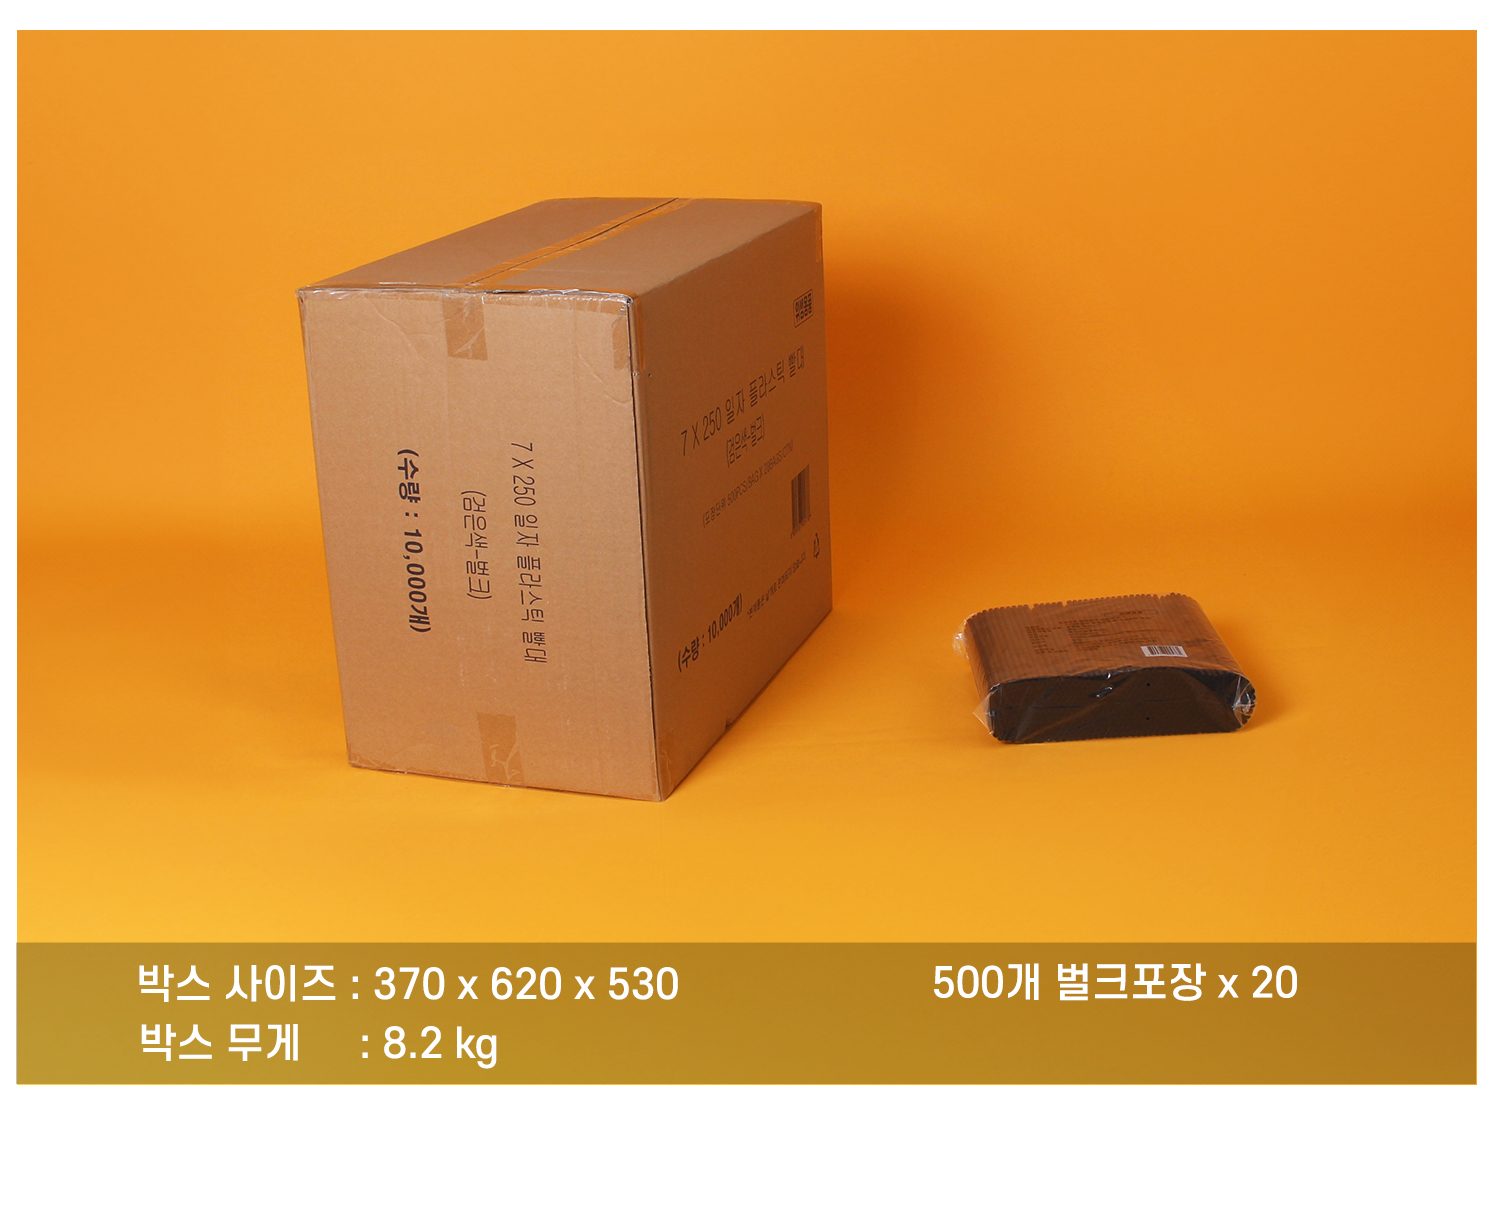 플라스틱일자빨대의 배송 박스 정보와 박스 내 소포장 단위의 묶음을 보여주는 이미지